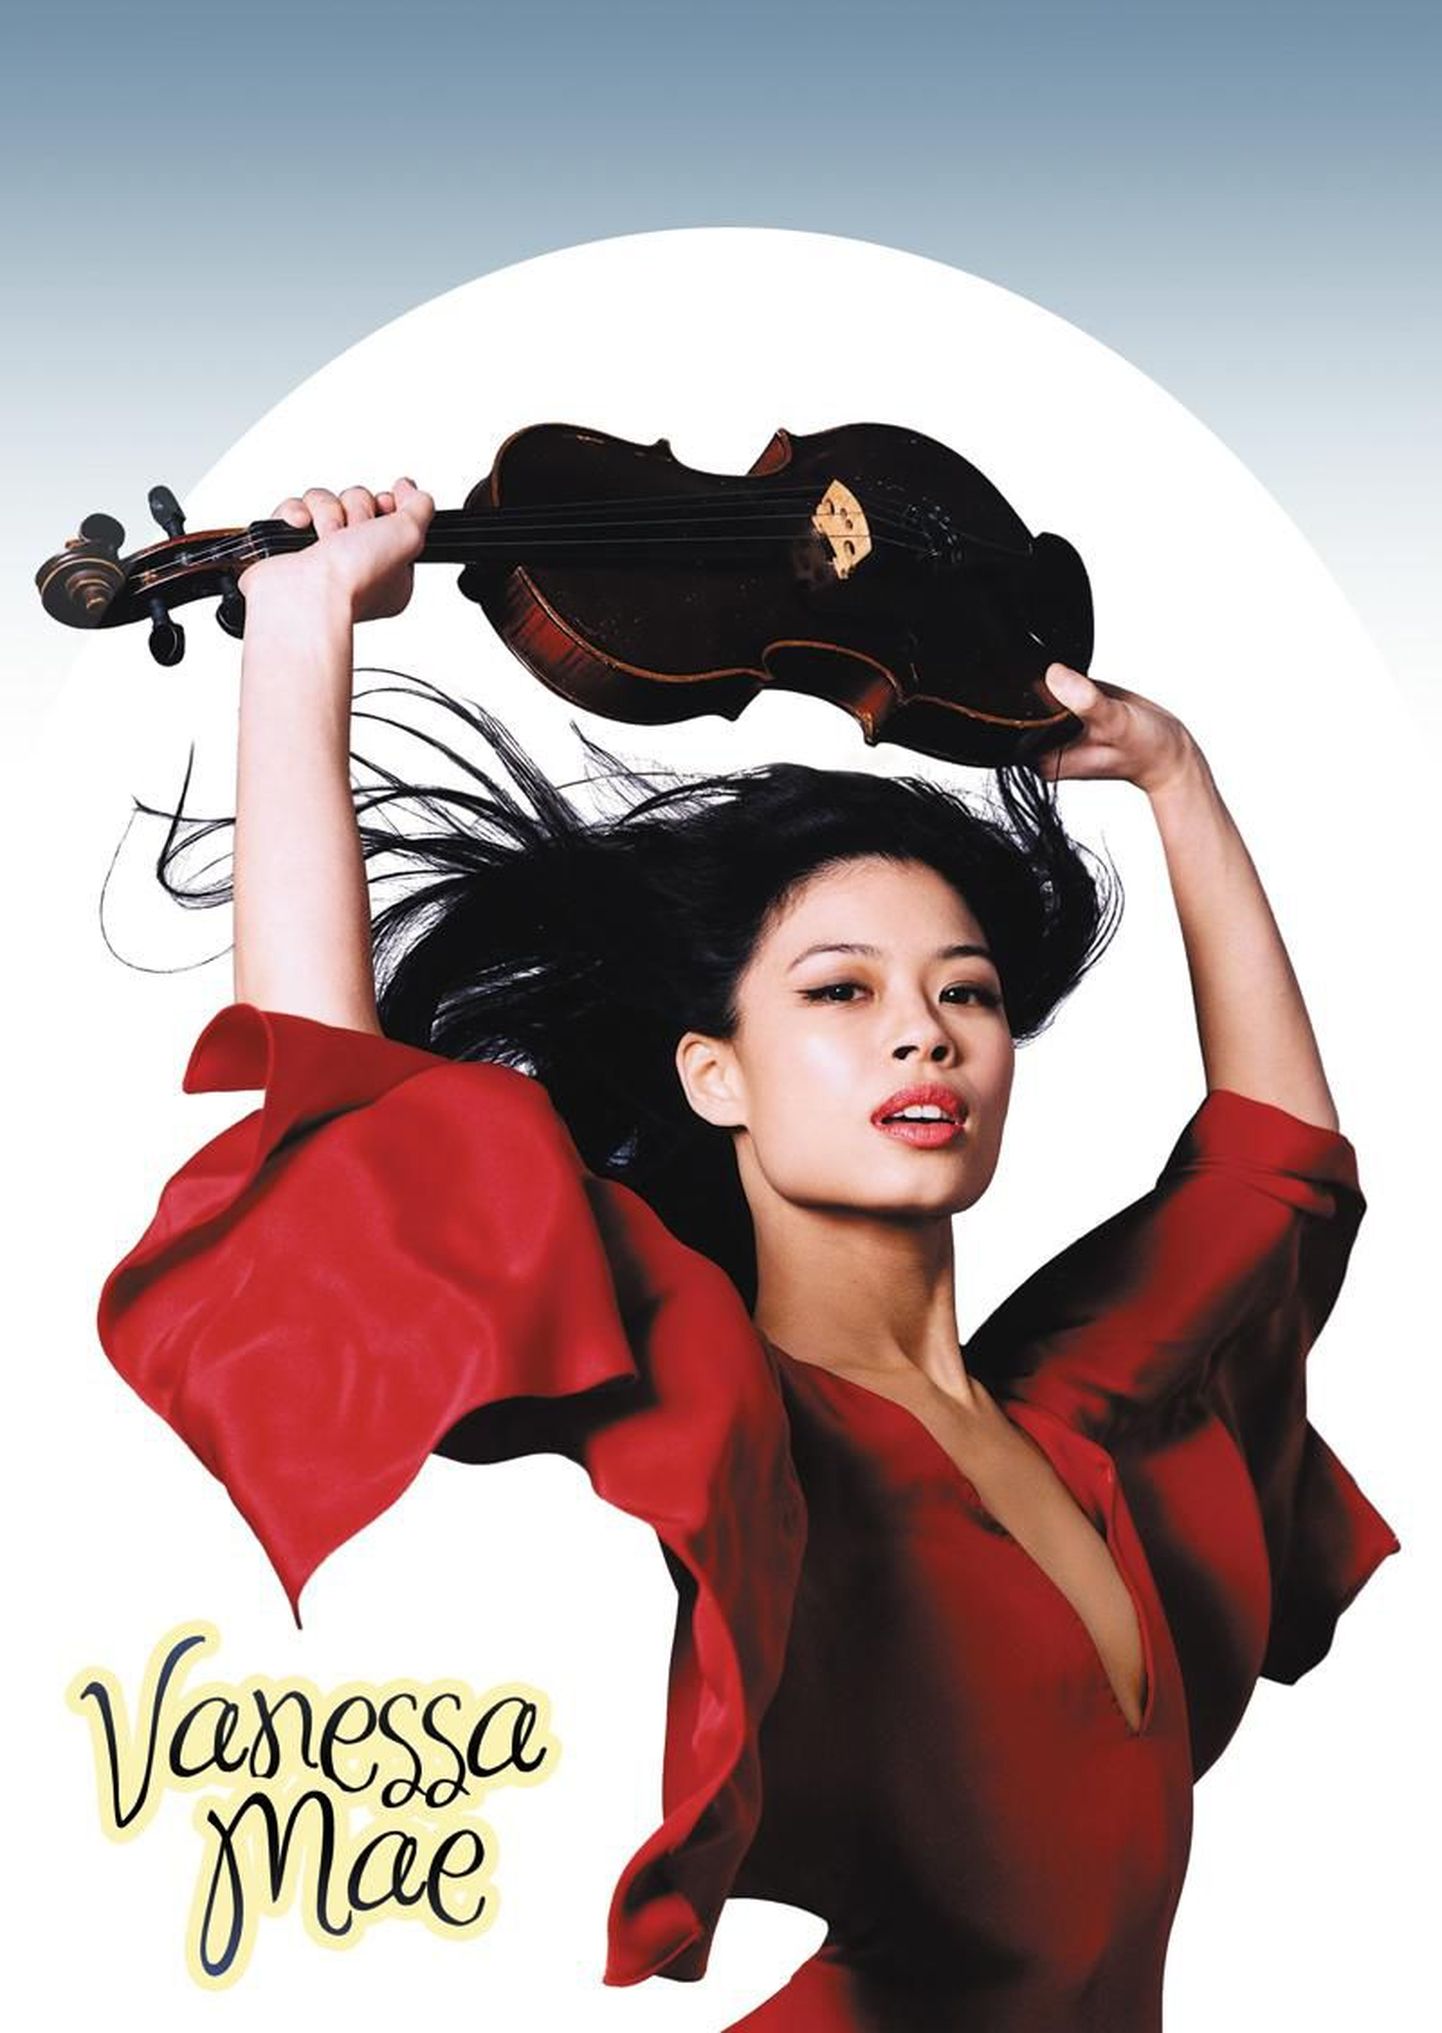 Maailma ühe tuntuima viiuldaja Vanessa Mae ainus kontsert Eestis toimub 14. detsembril Saku Suurhallis